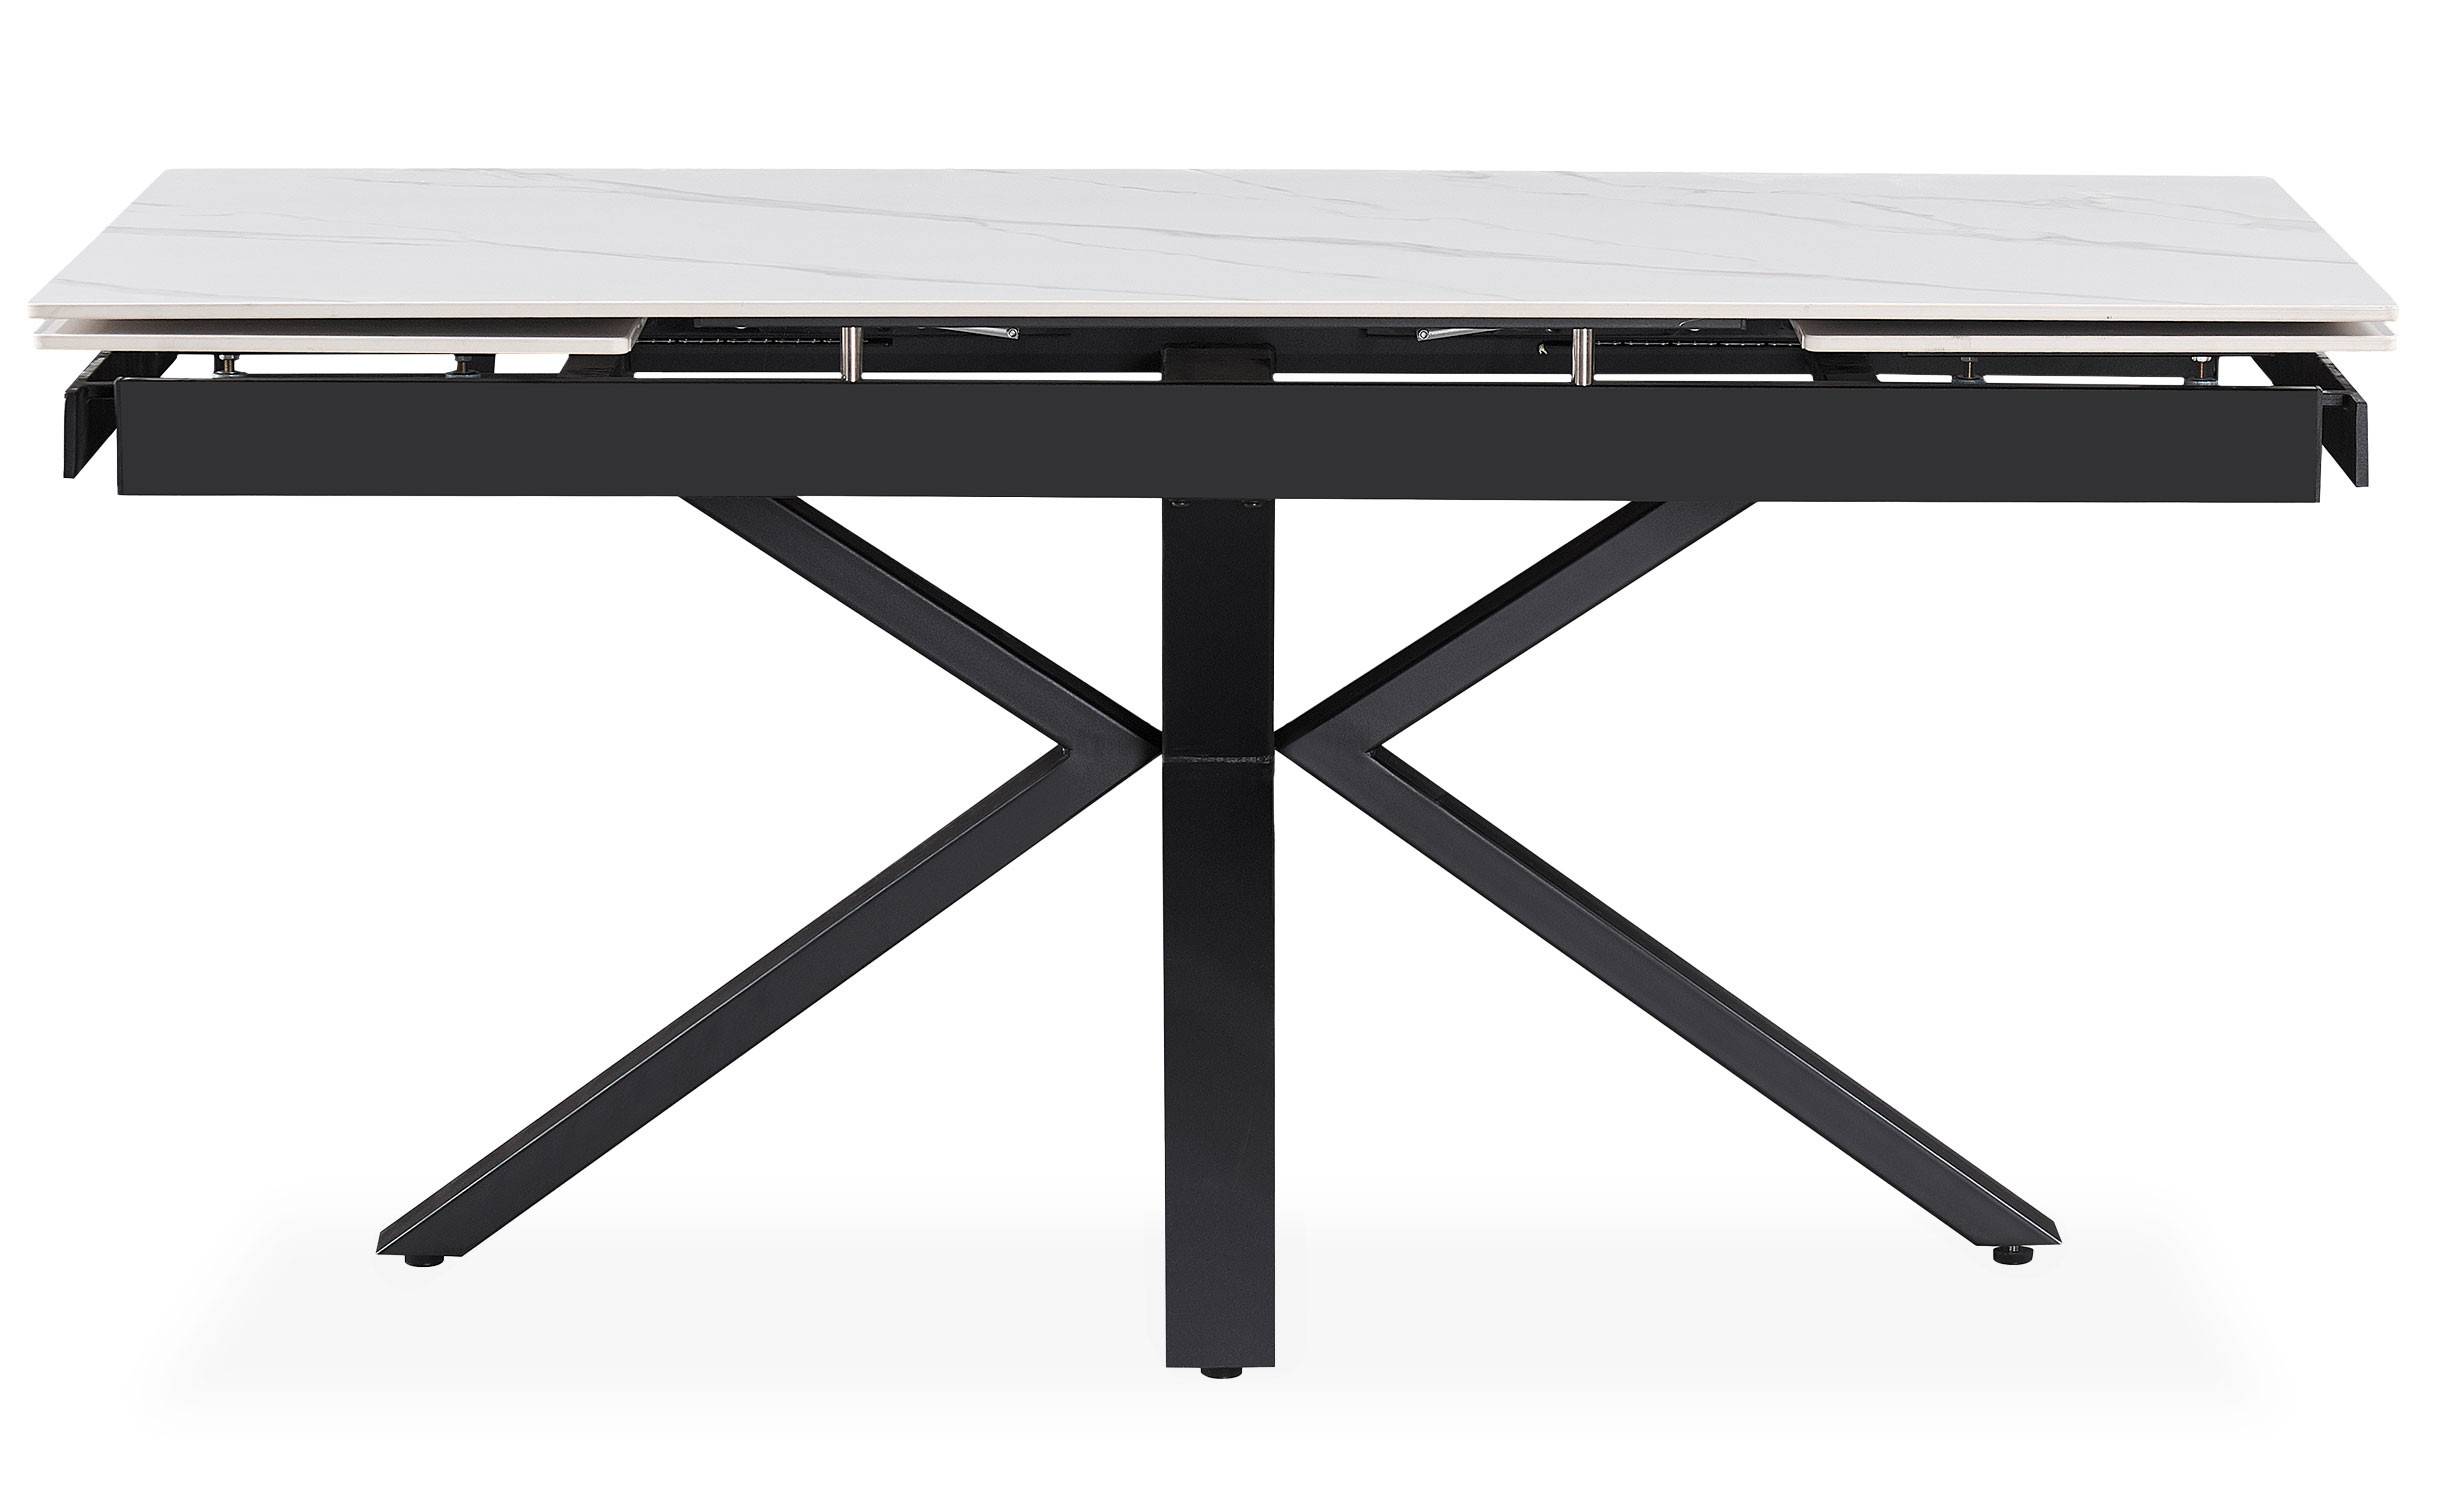 Harrisson uittrekbare tafel 160-240cm Zwart metaal en wit keramiek met marmereffect